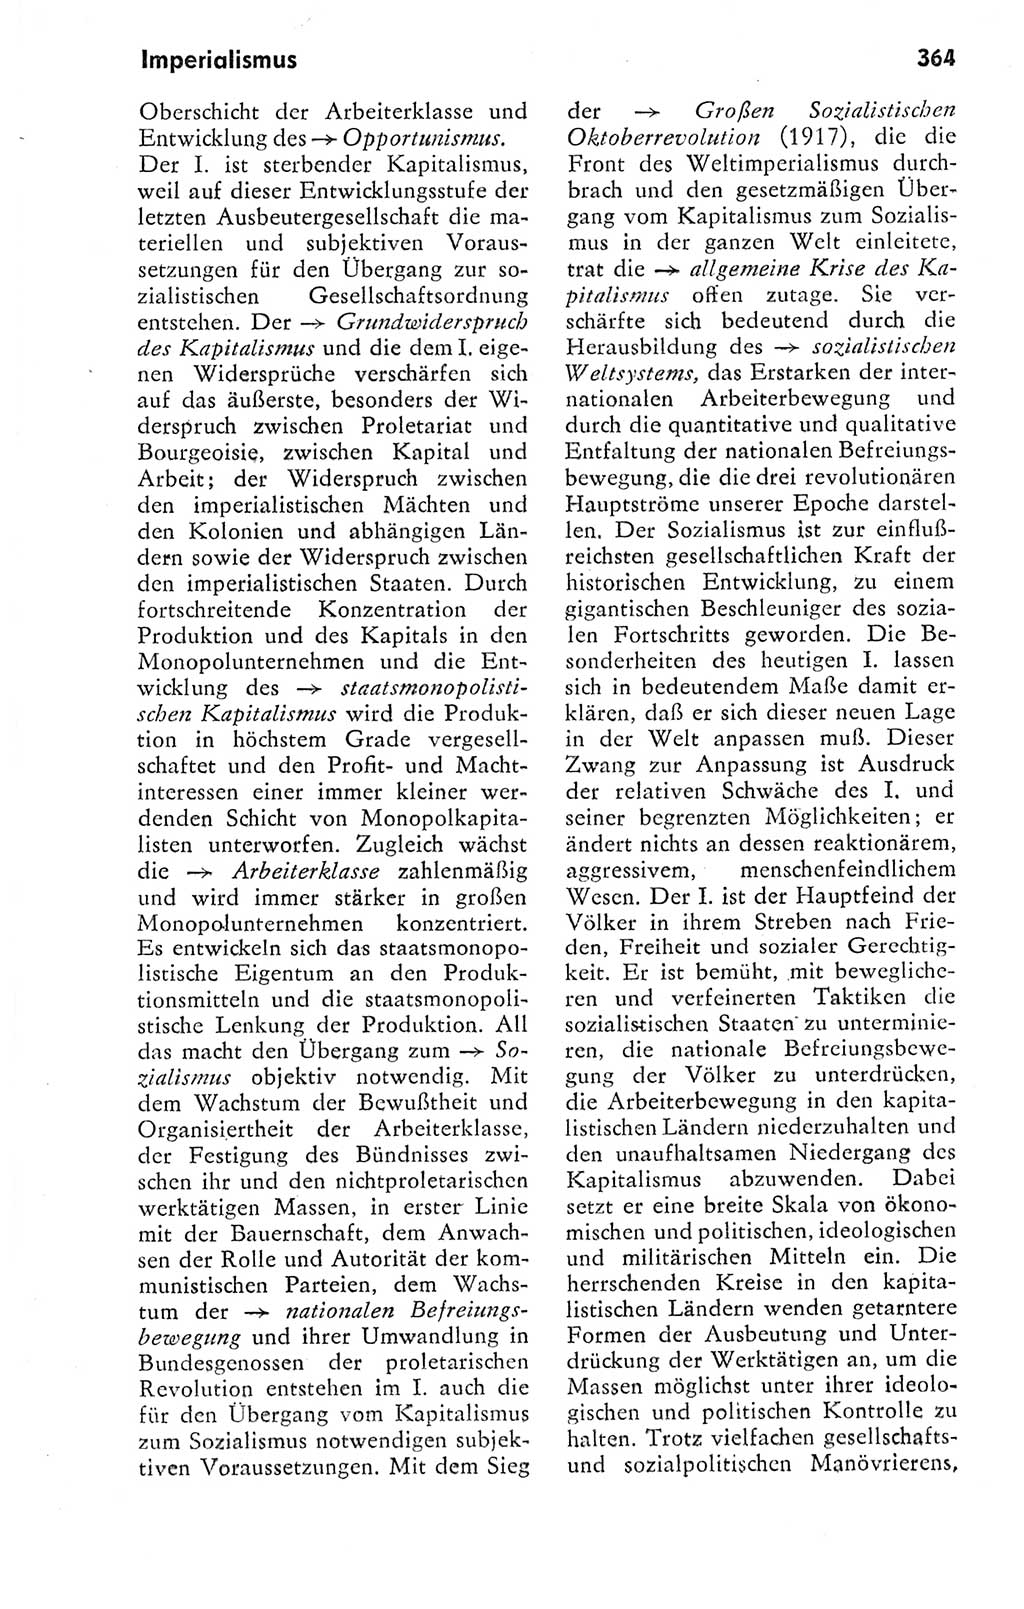 Kleines politisches Wörterbuch [Deutsche Demokratische Republik (DDR)] 1978, Seite 364 (Kl. pol. Wb. DDR 1978, S. 364)